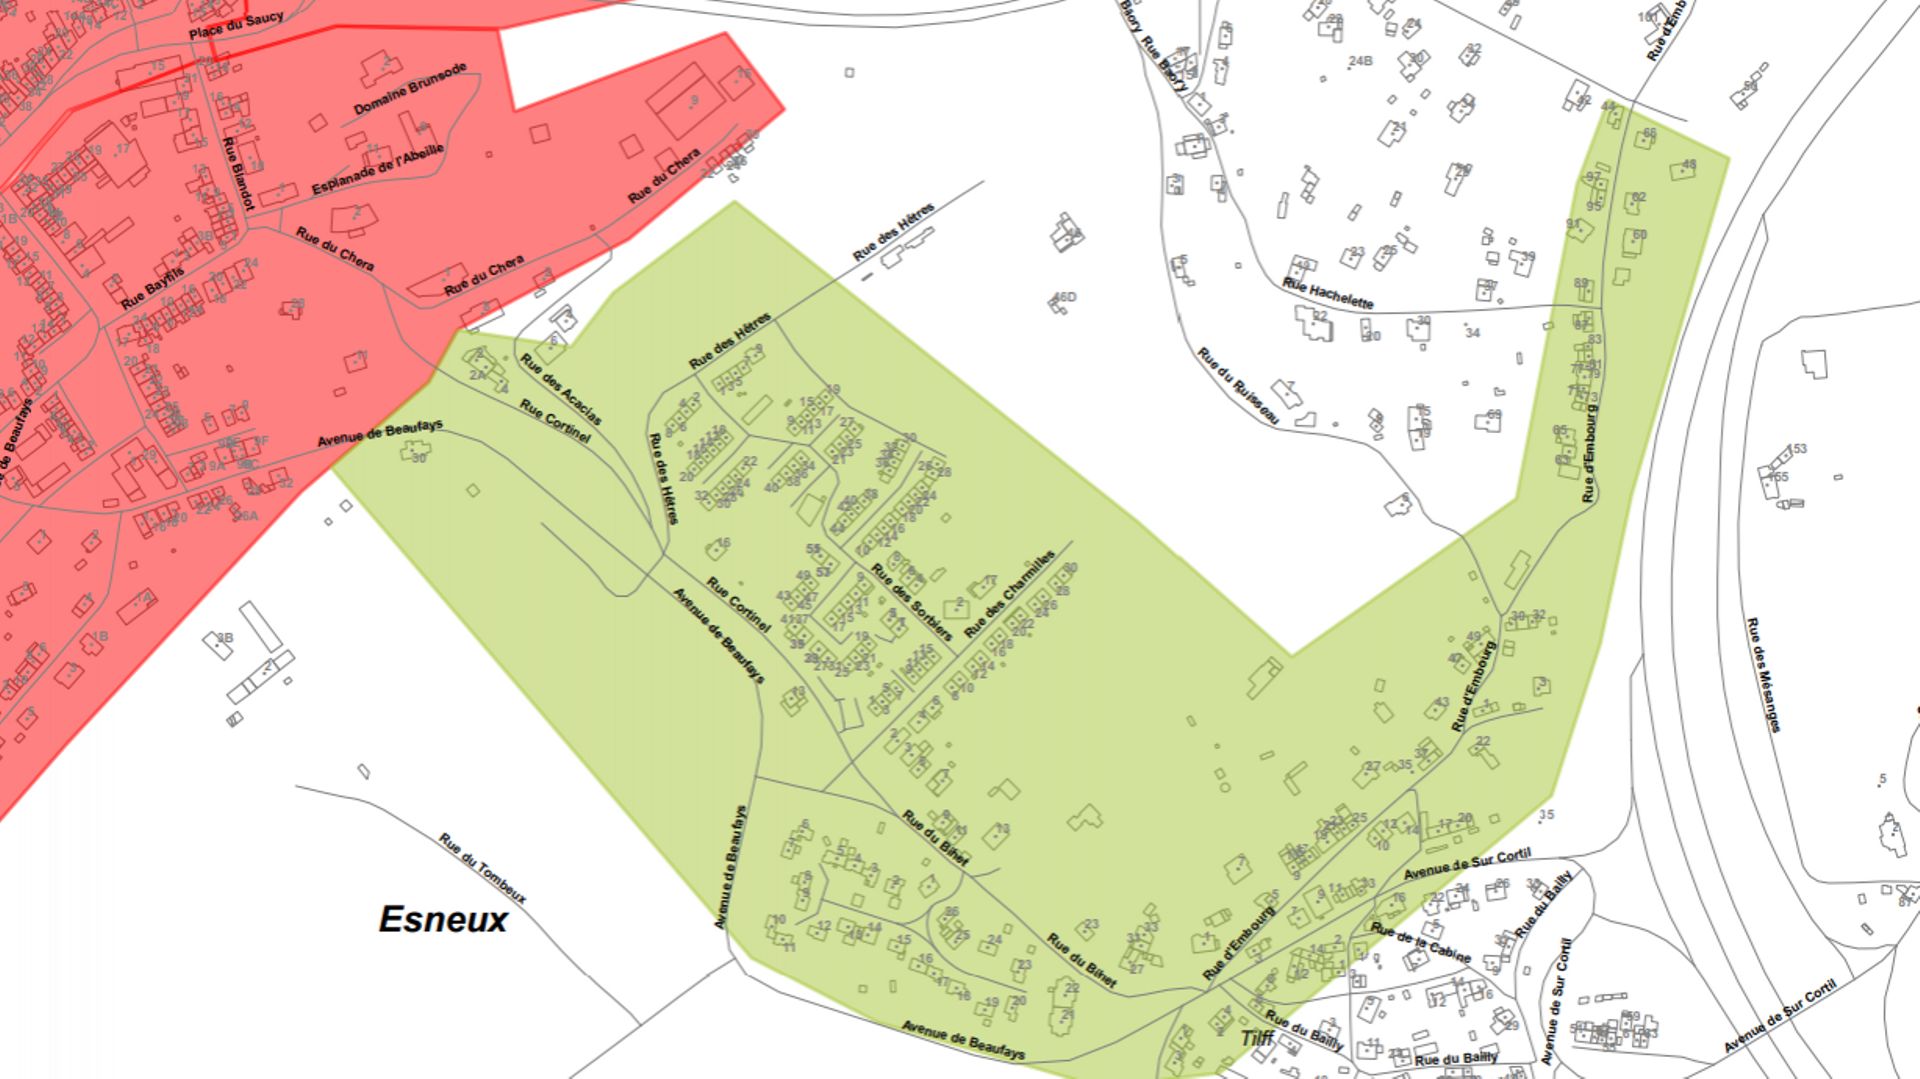 Les habitants qui vivent dans la zone en vert peuvent appeler RESA pour procéder à la réouverture de leur compteur.